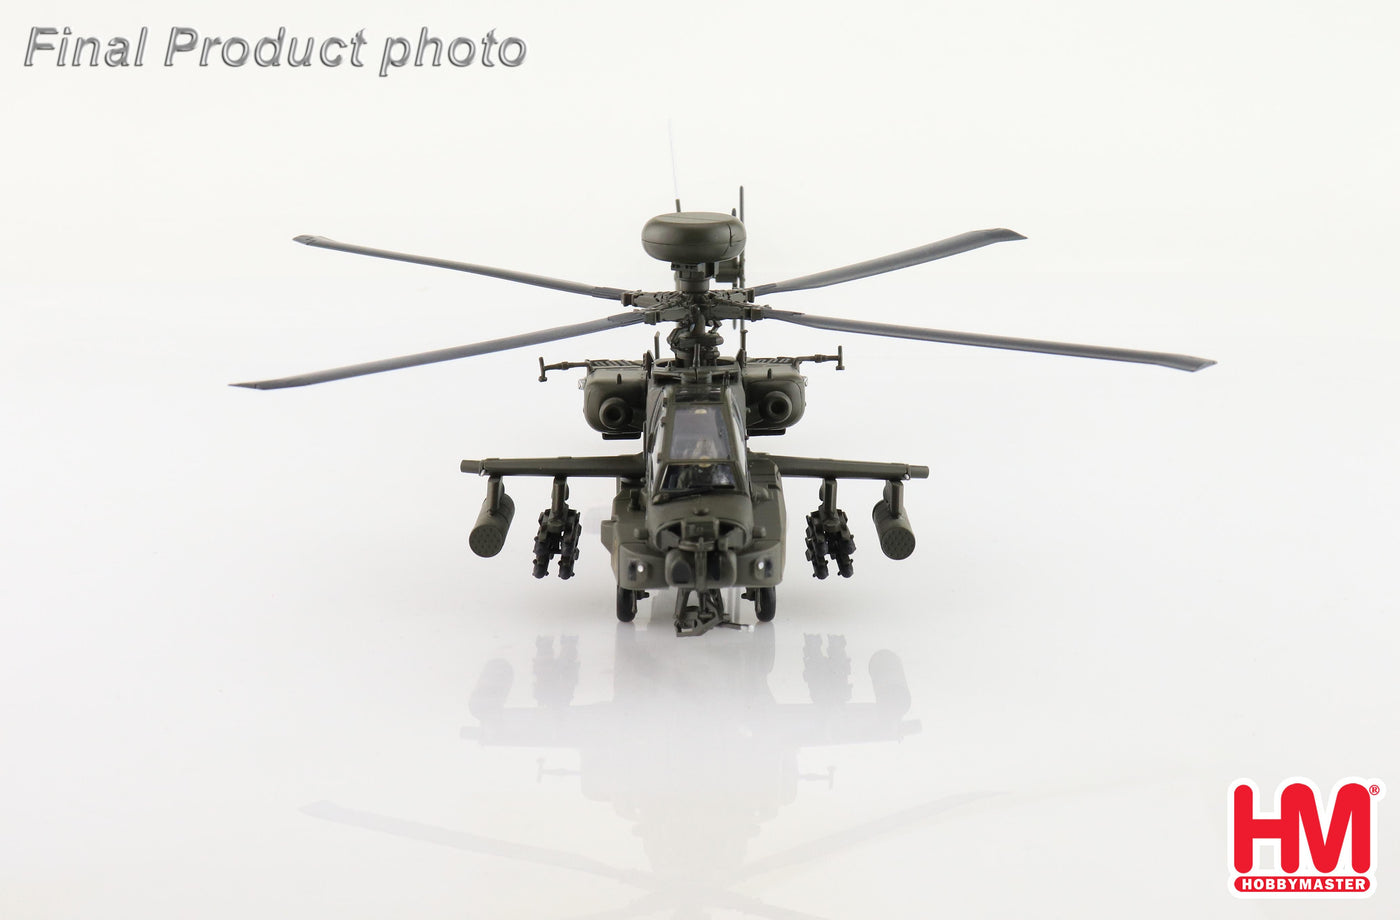 1/72 AH-64E Apache Guardian 73117 1st Air Cavalry US Army 2018